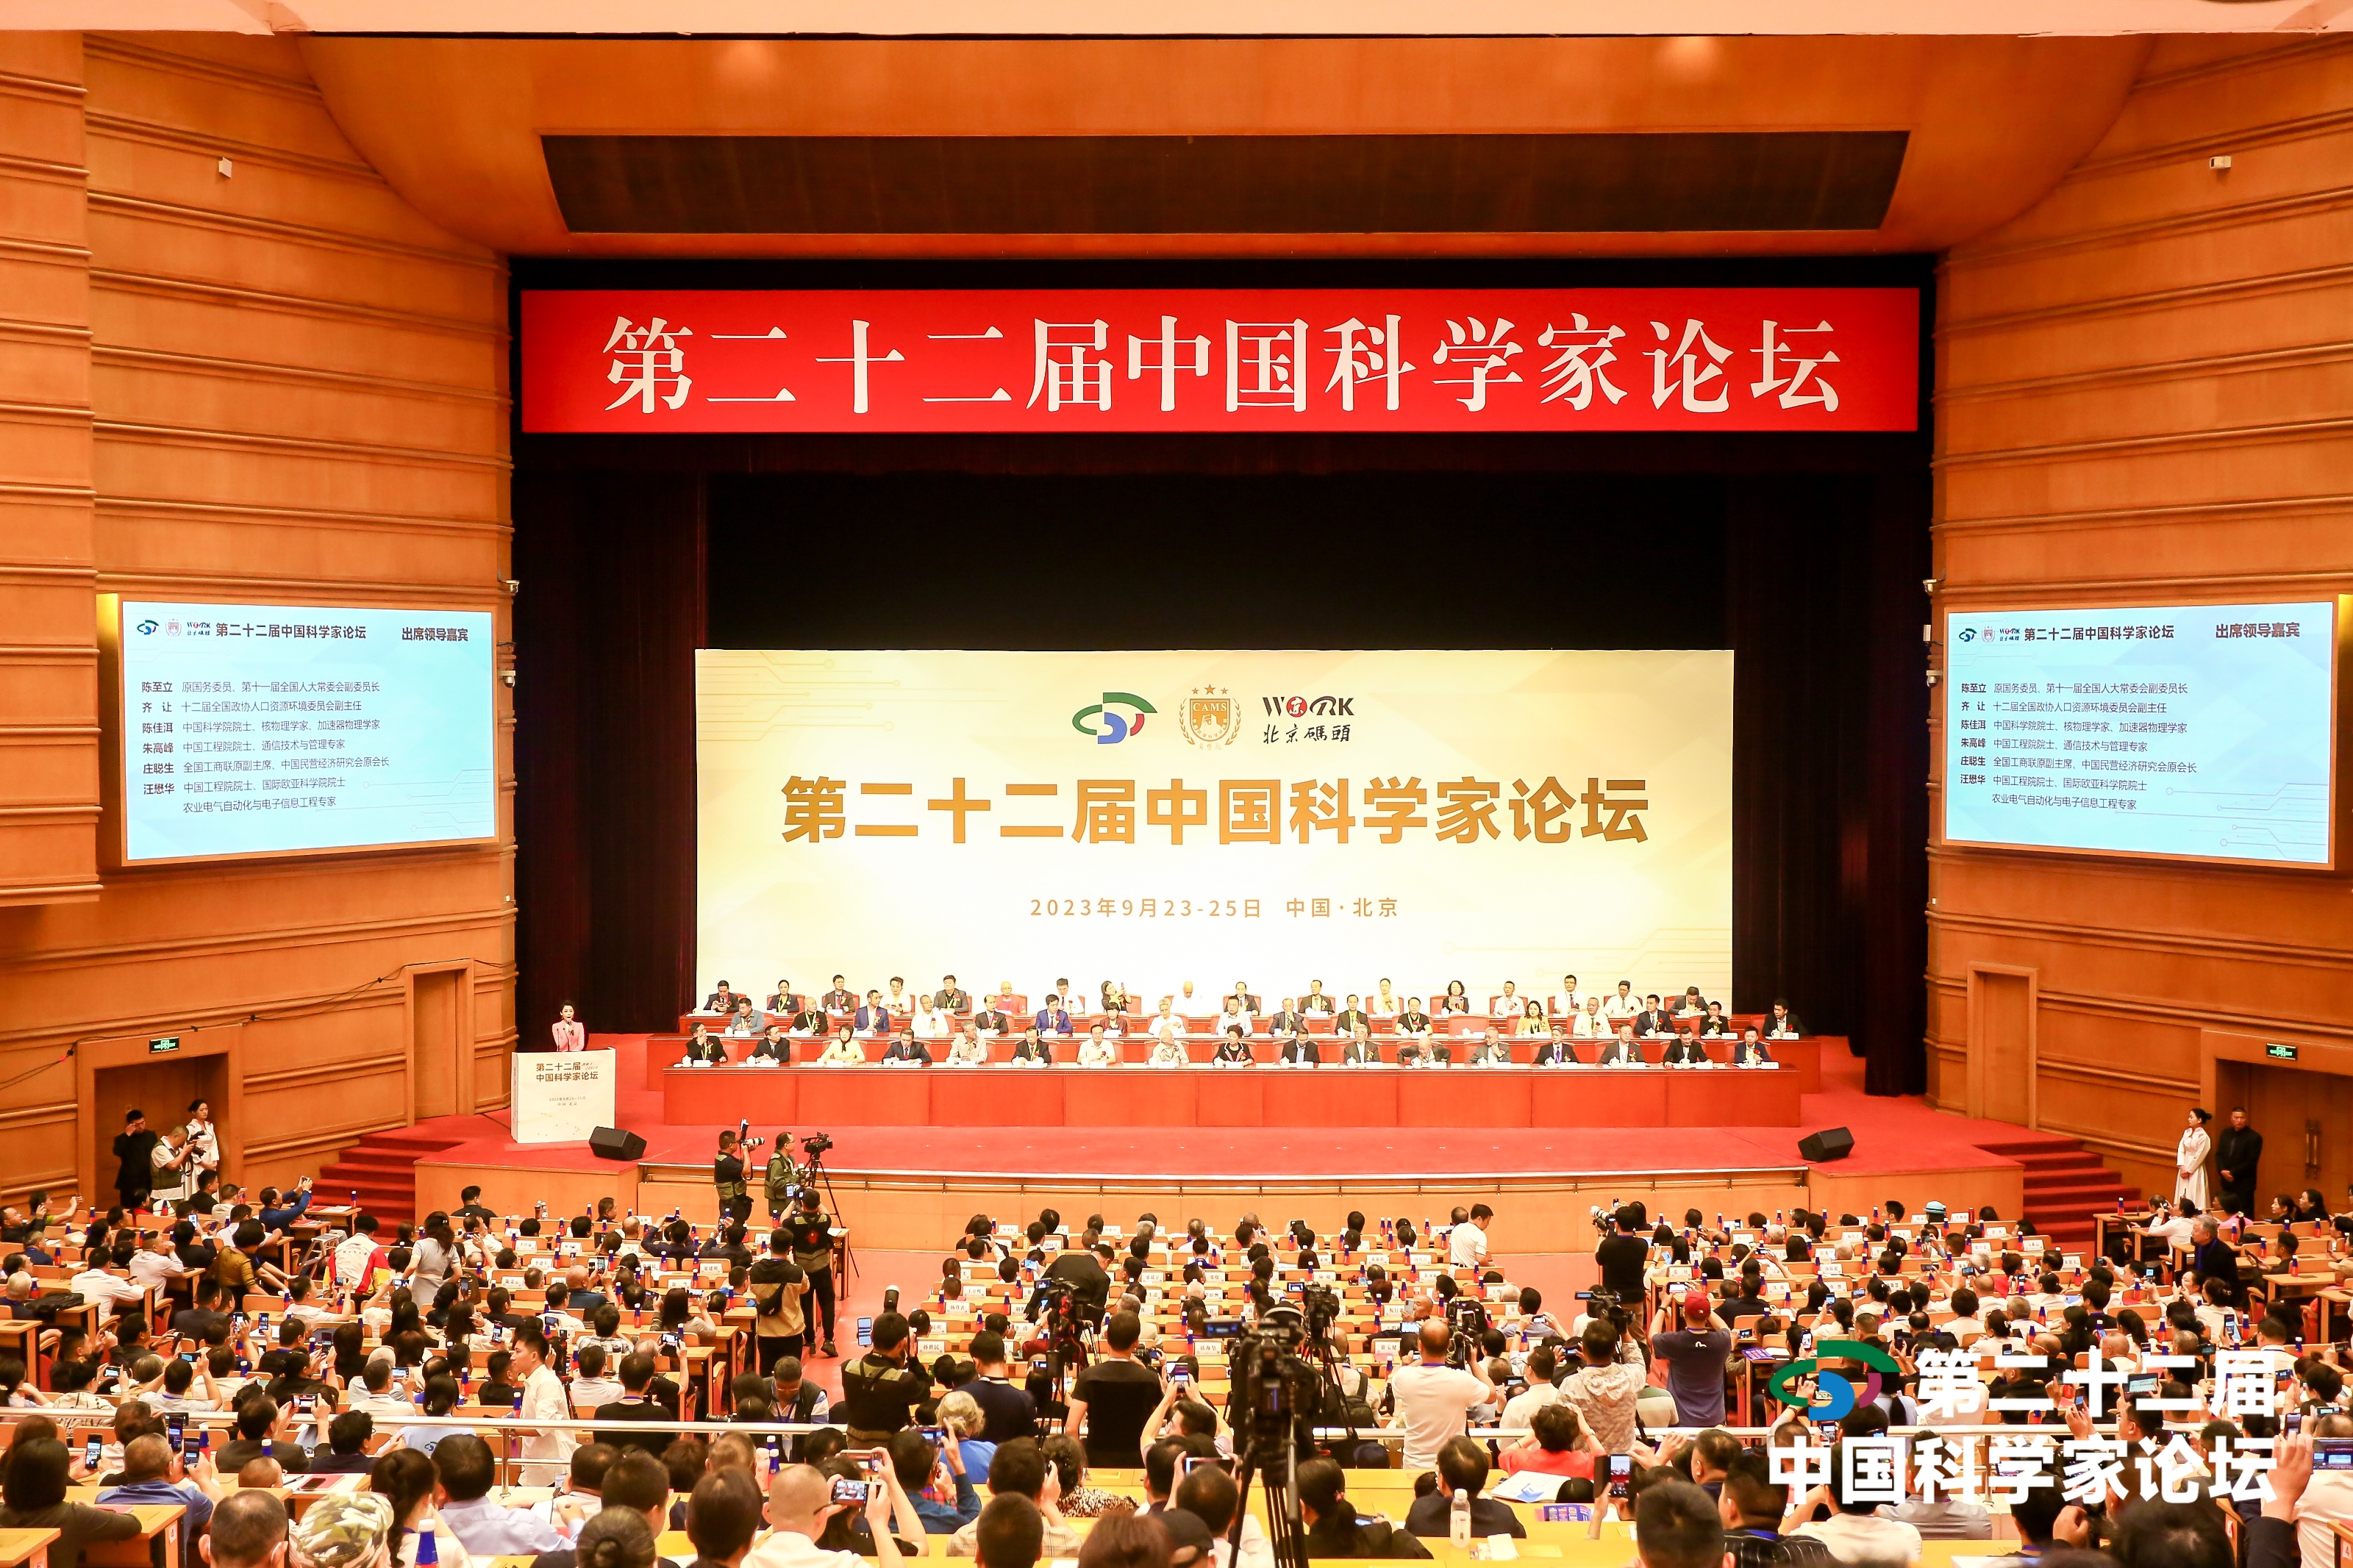 朱潛榮董事長受邀出席第二十二屆中國科學家論壇